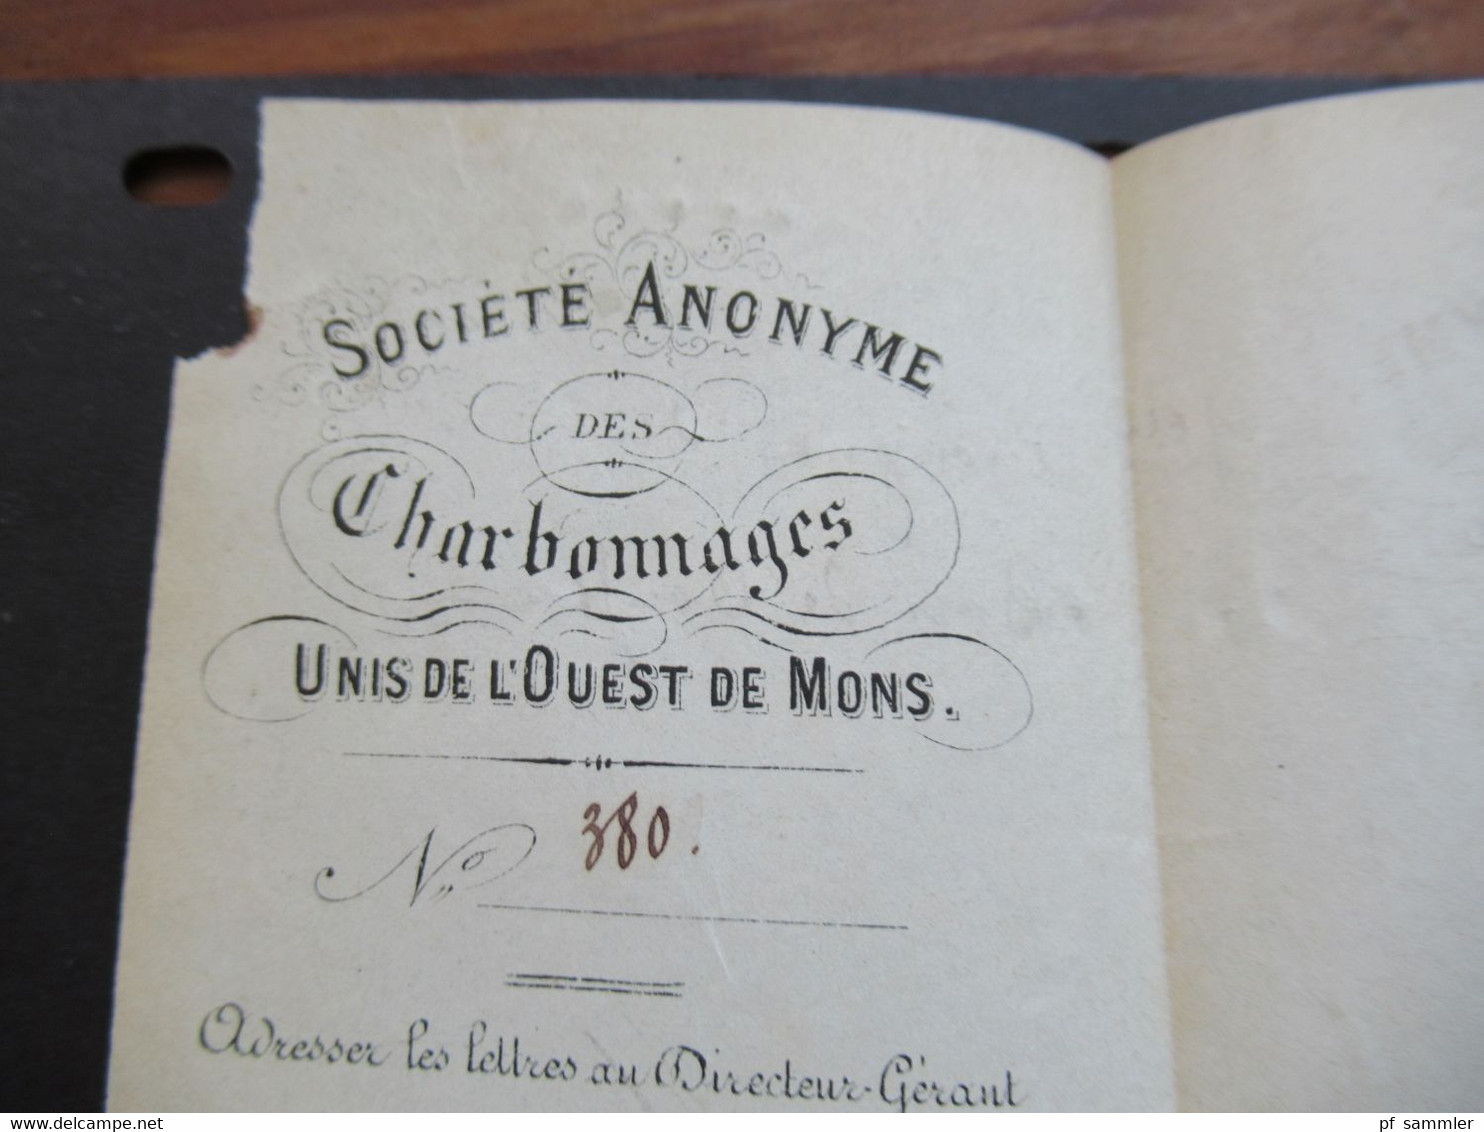 Belgien 1870 Nr.28 EF Auslandsbrief über Paris Boussu - Crespin PD / France Midi Faltbrief mit Inhalt viele Stempel